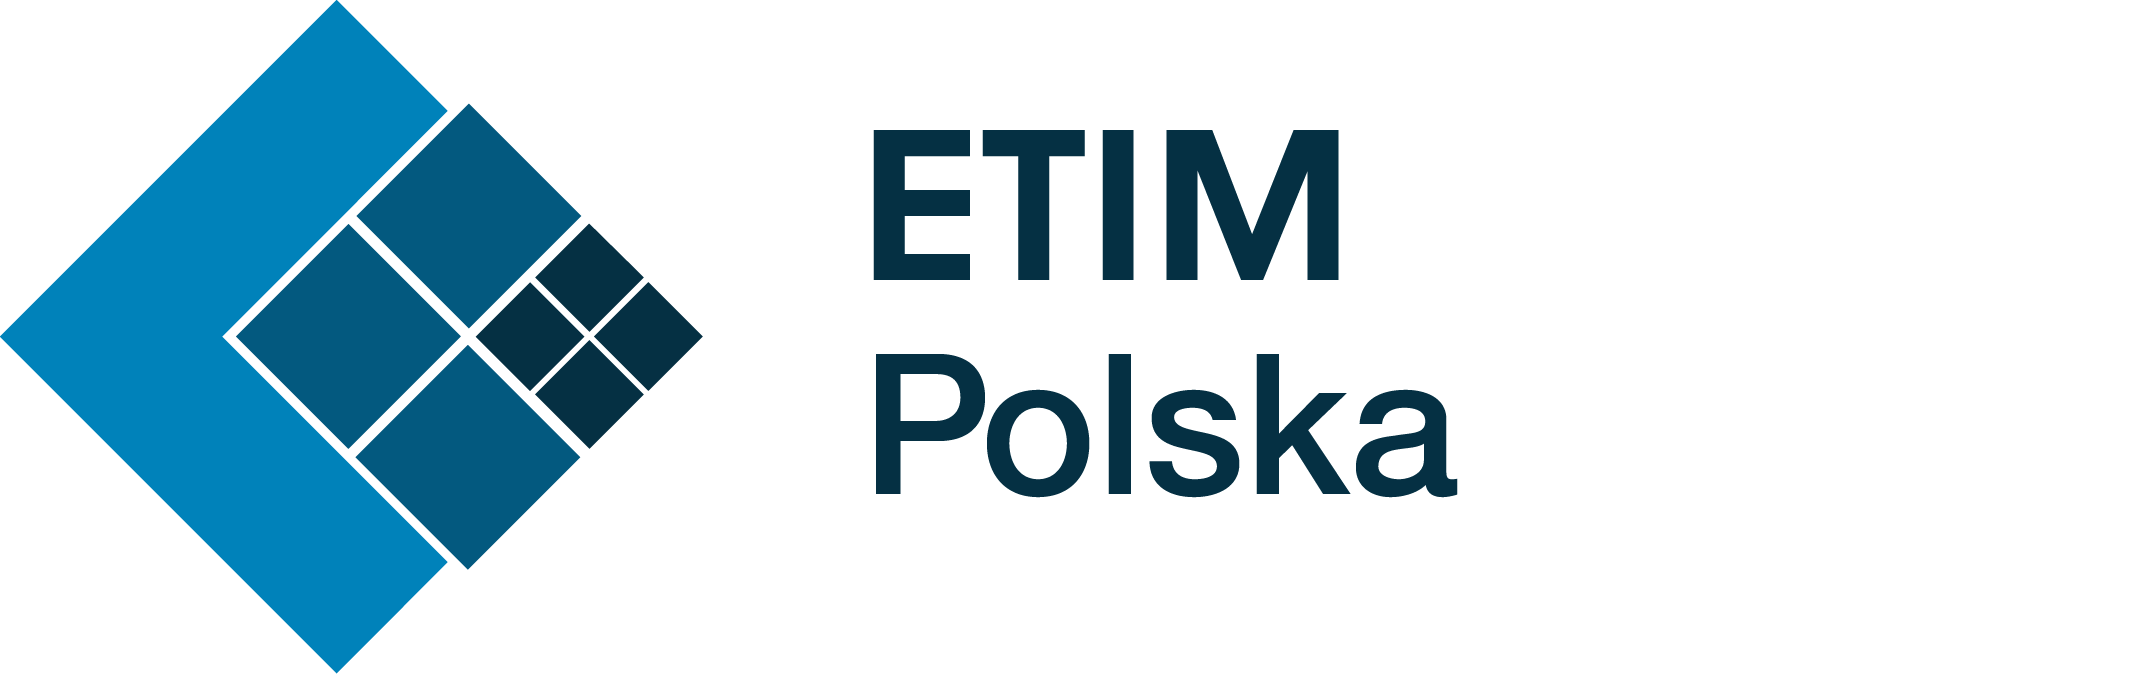 ETIM.org.pl